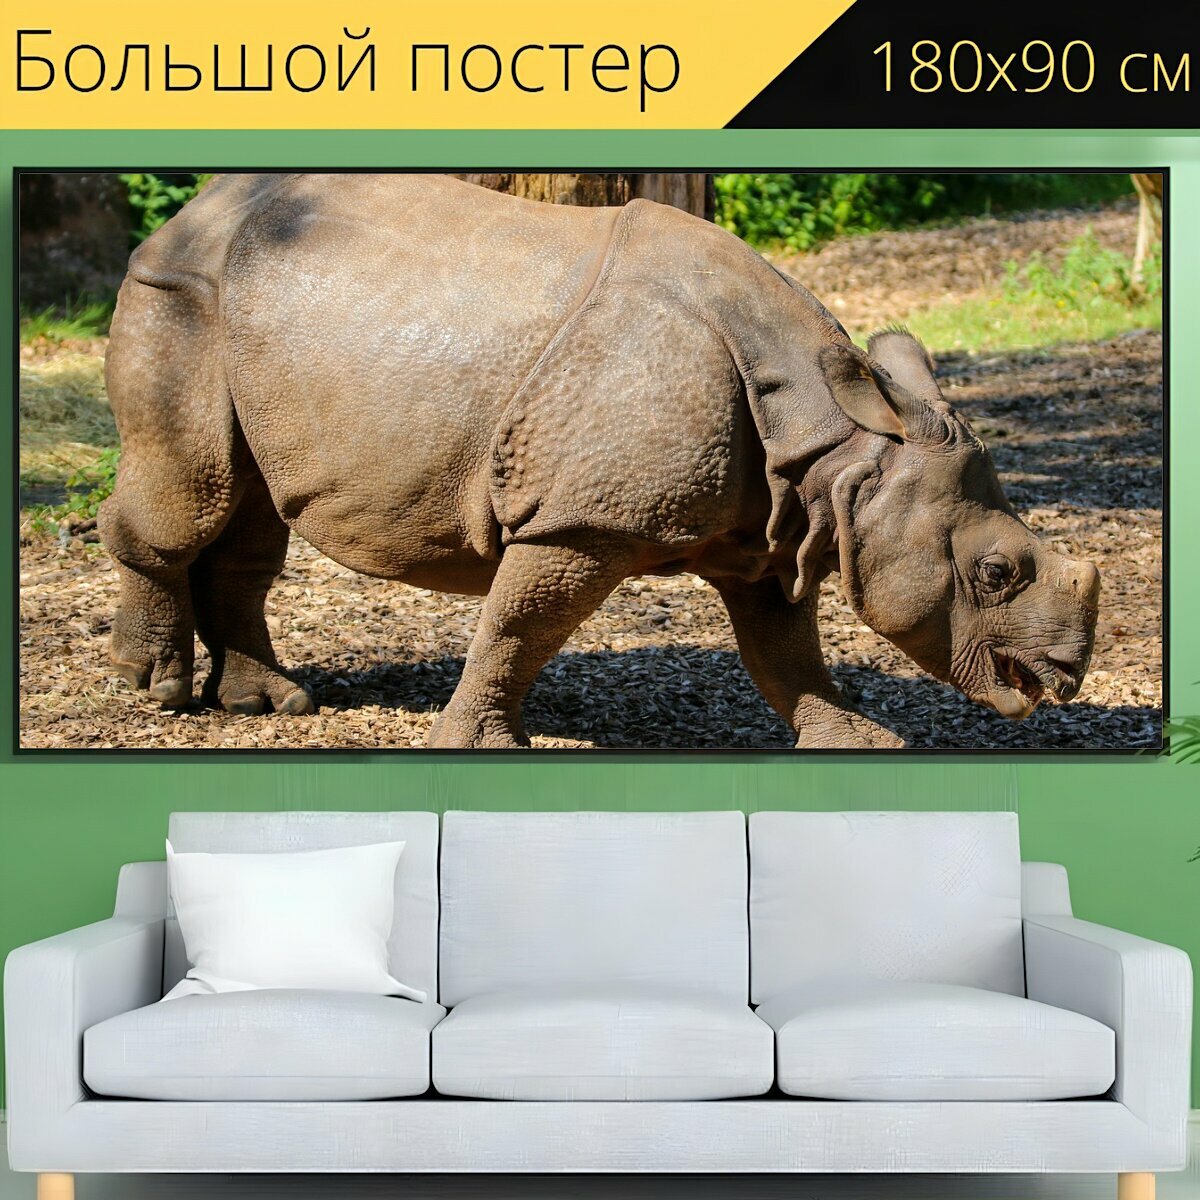 Большой постер "Животные, носорог, индийский носорог" 180 x 90 см. для интерьера